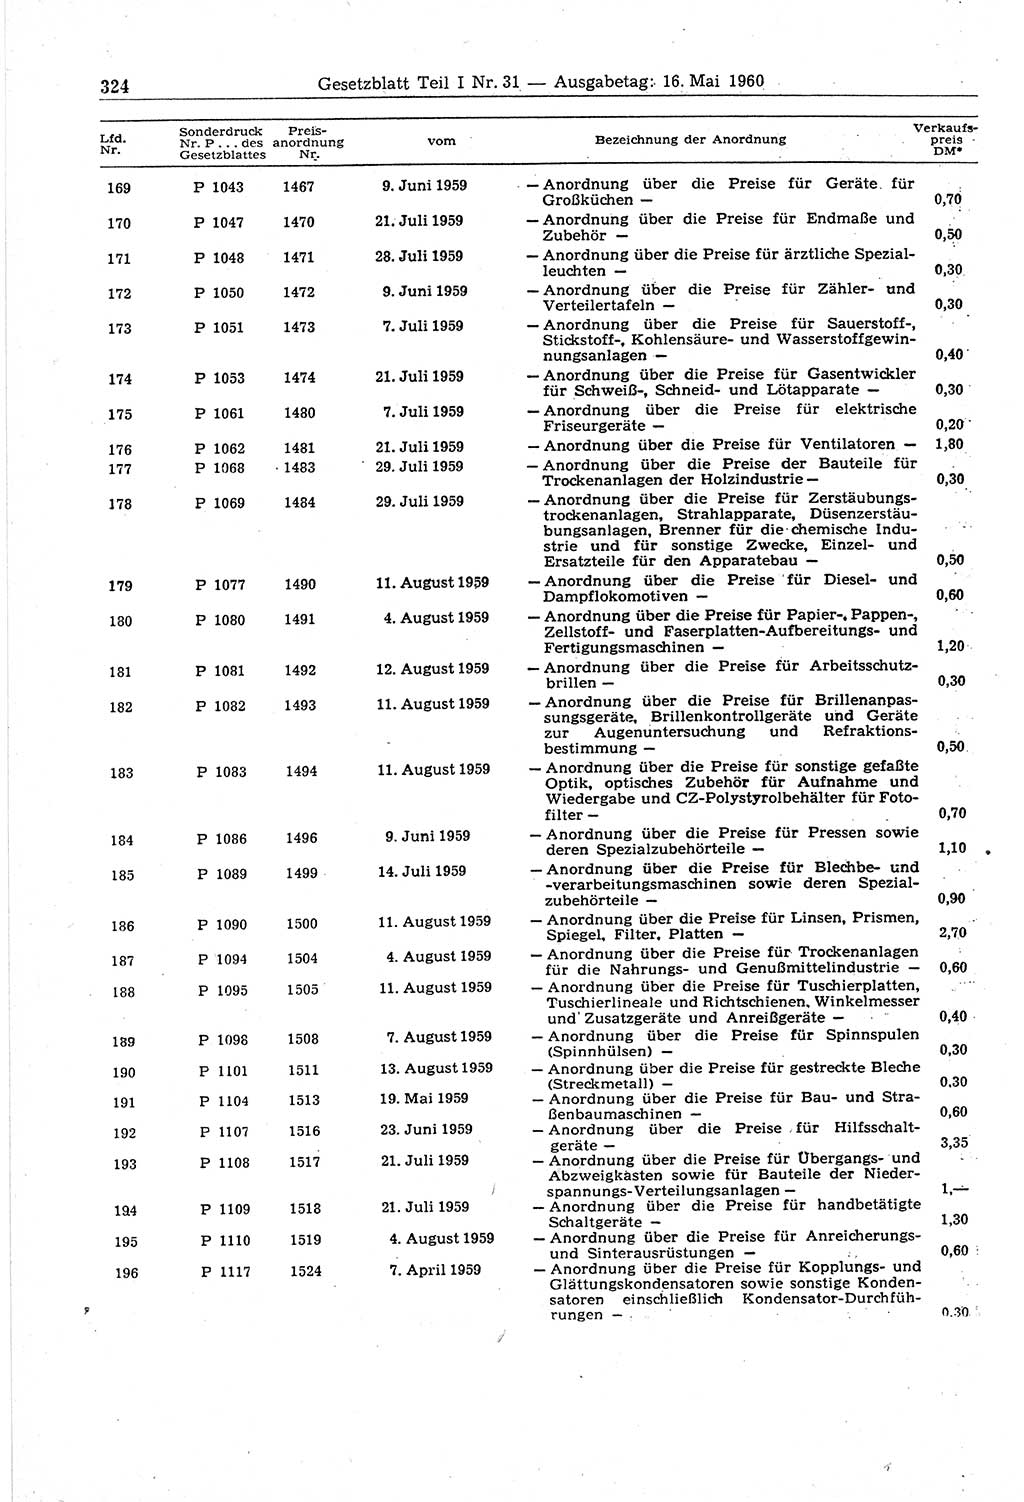 Gesetzblatt (GBl.) der Deutschen Demokratischen Republik (DDR) Teil Ⅰ 1960, Seite 324 (GBl. DDR Ⅰ 1960, S. 324)